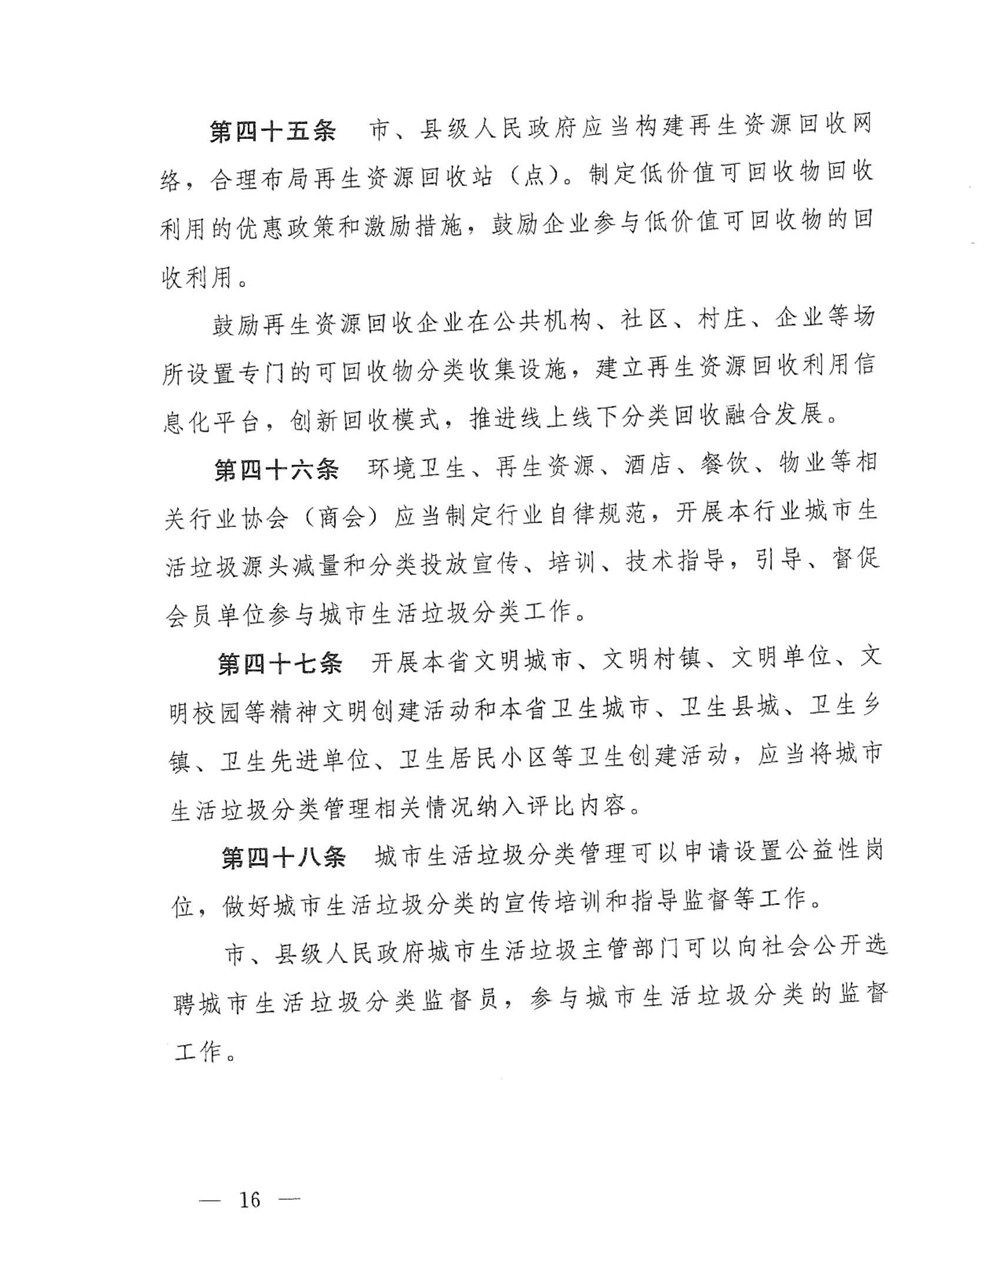 1_河南省垃圾分类管理办法_14.jpg